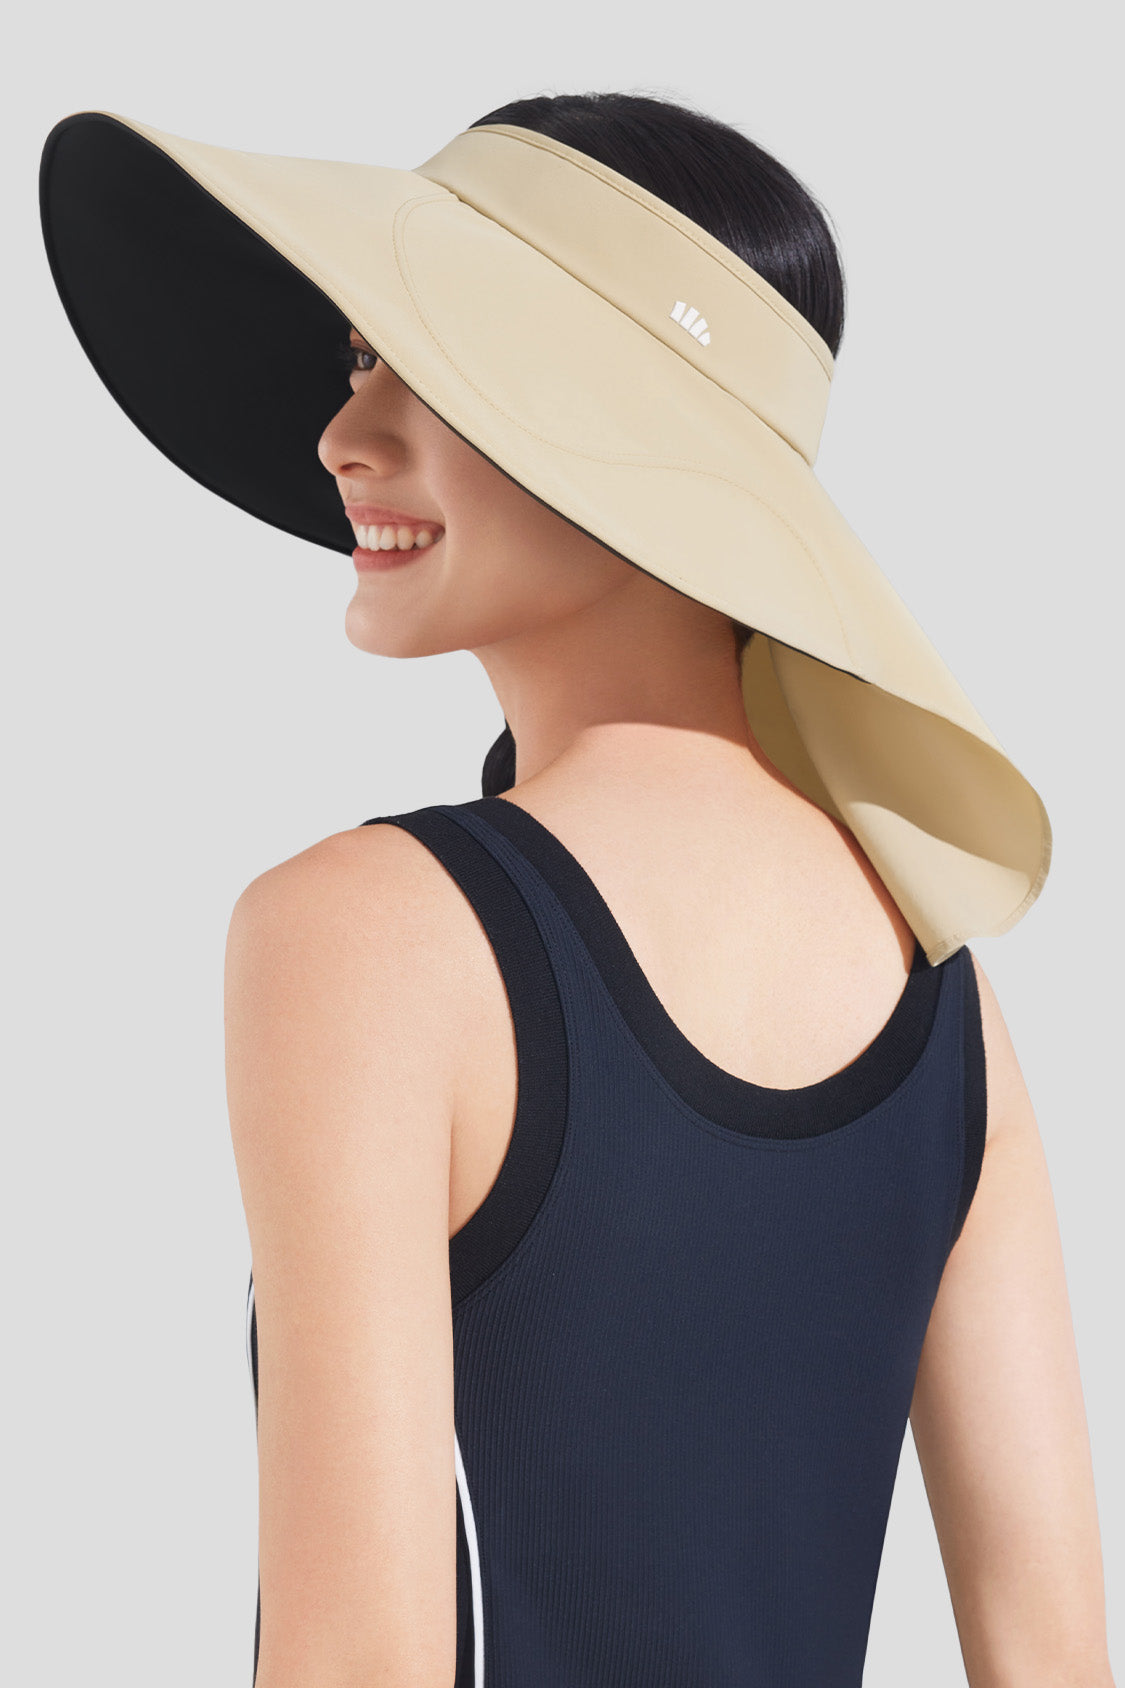 4E's Novelty Floppy Sun Hat for Women with Sunglasses, UPF 50+